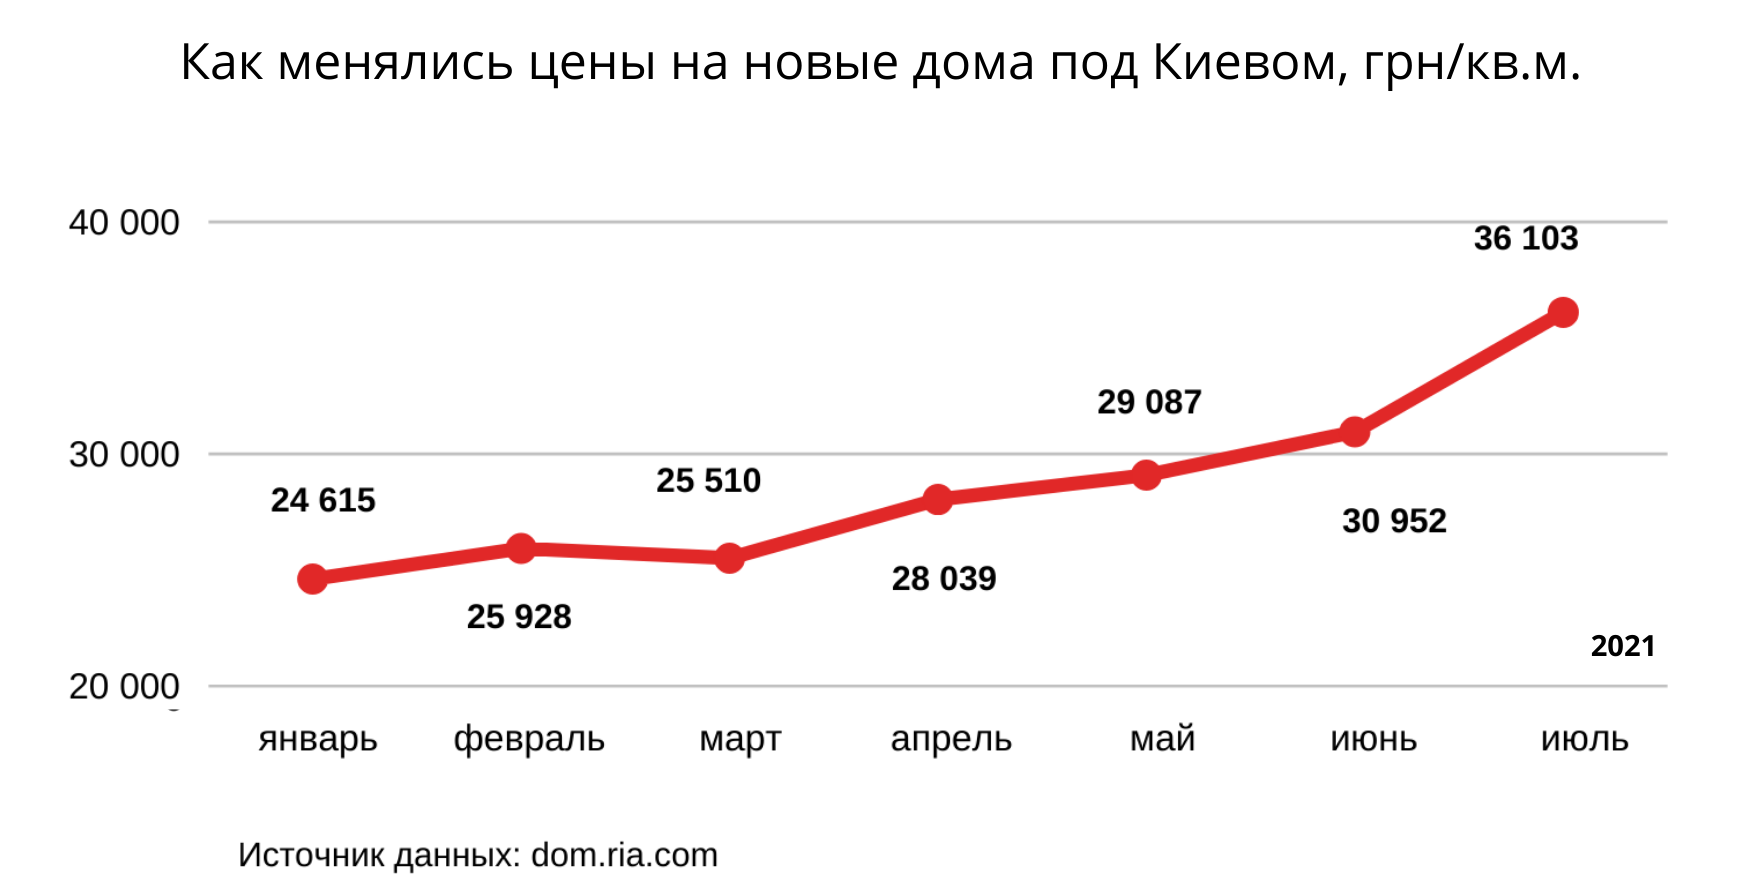 Коттеджи и таунхаусы под Киевом дорожают. Когда будут дешеветь? 